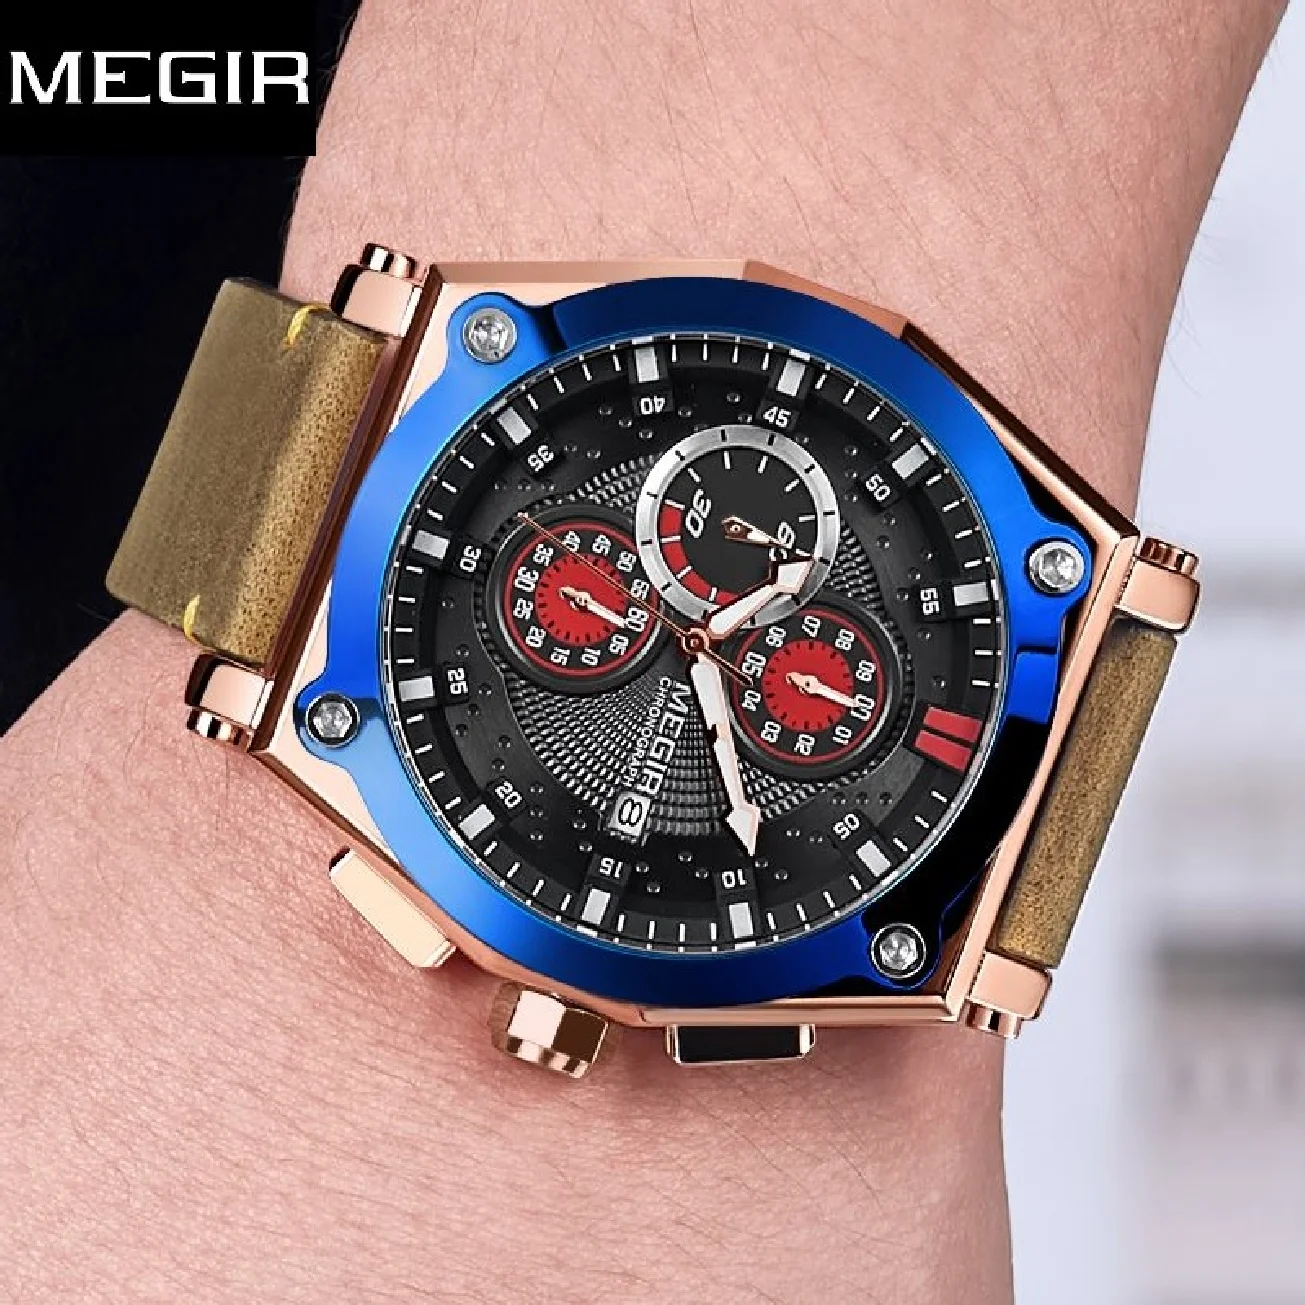 

MEGIR Original Chronograph Sport WristWatch Men Luxury Leather Male New Quartz Clock Erkek Kol Saati Montre Homme Zegarek Meski